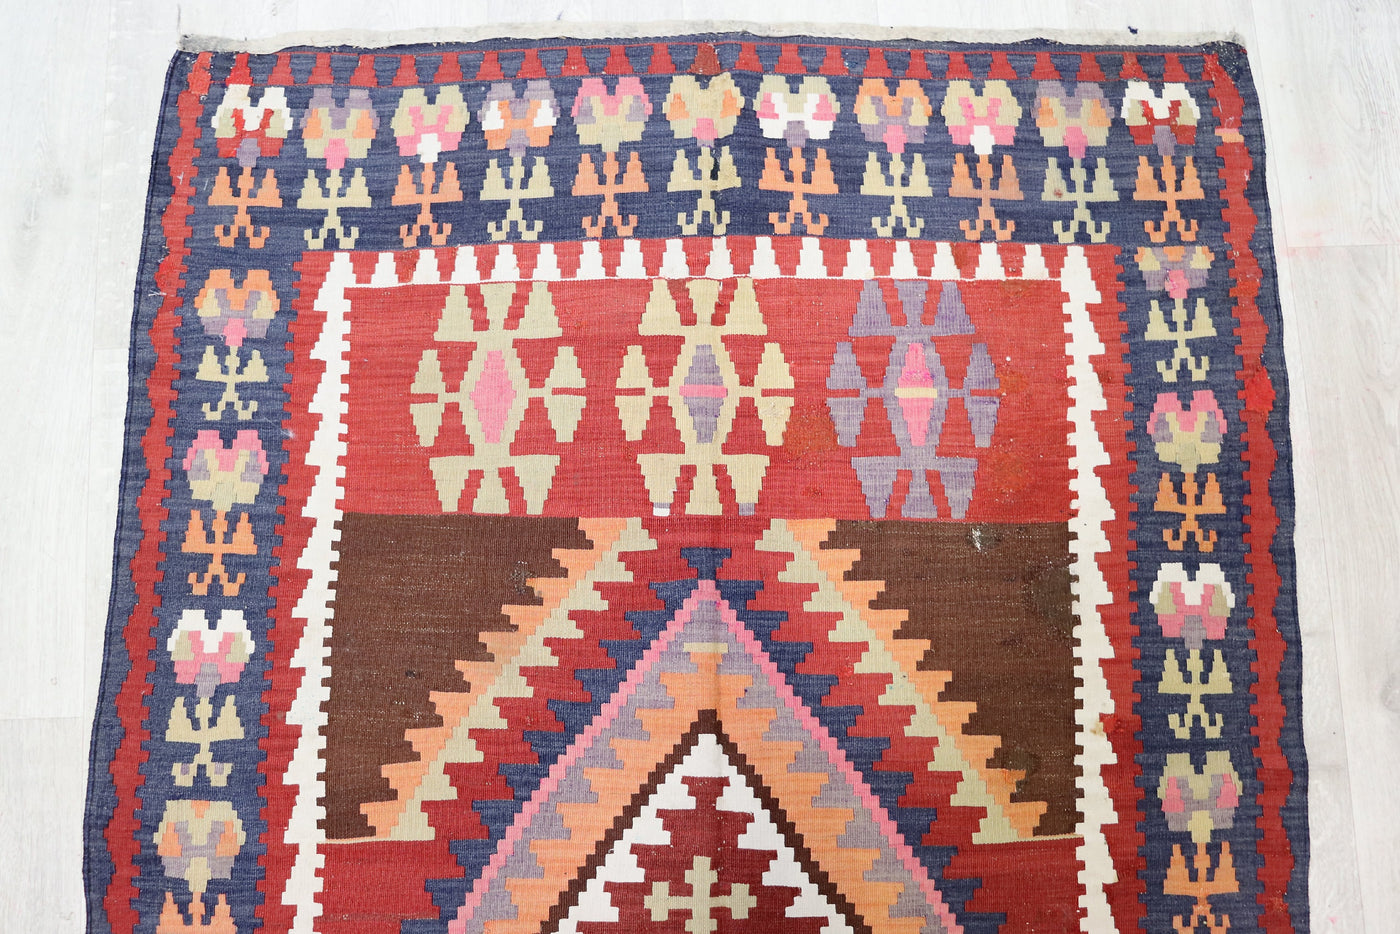 305x115 cm antike handgewebte orient kazak Teppich Nomaden kaukasische kelim  No:345 Teppiche Orientsbazar   